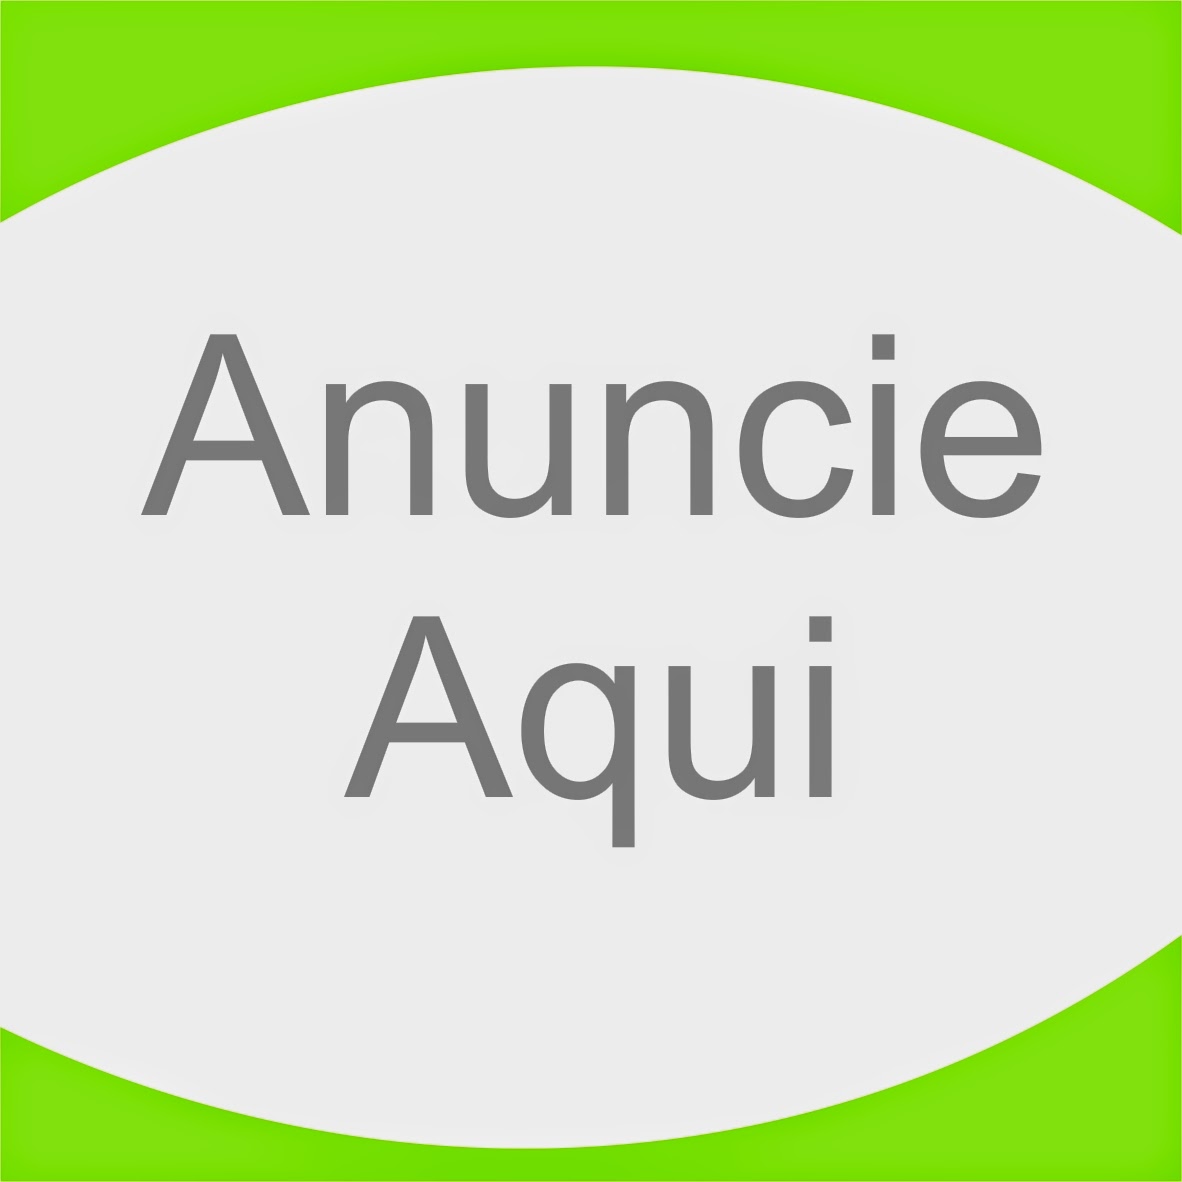 Anucie